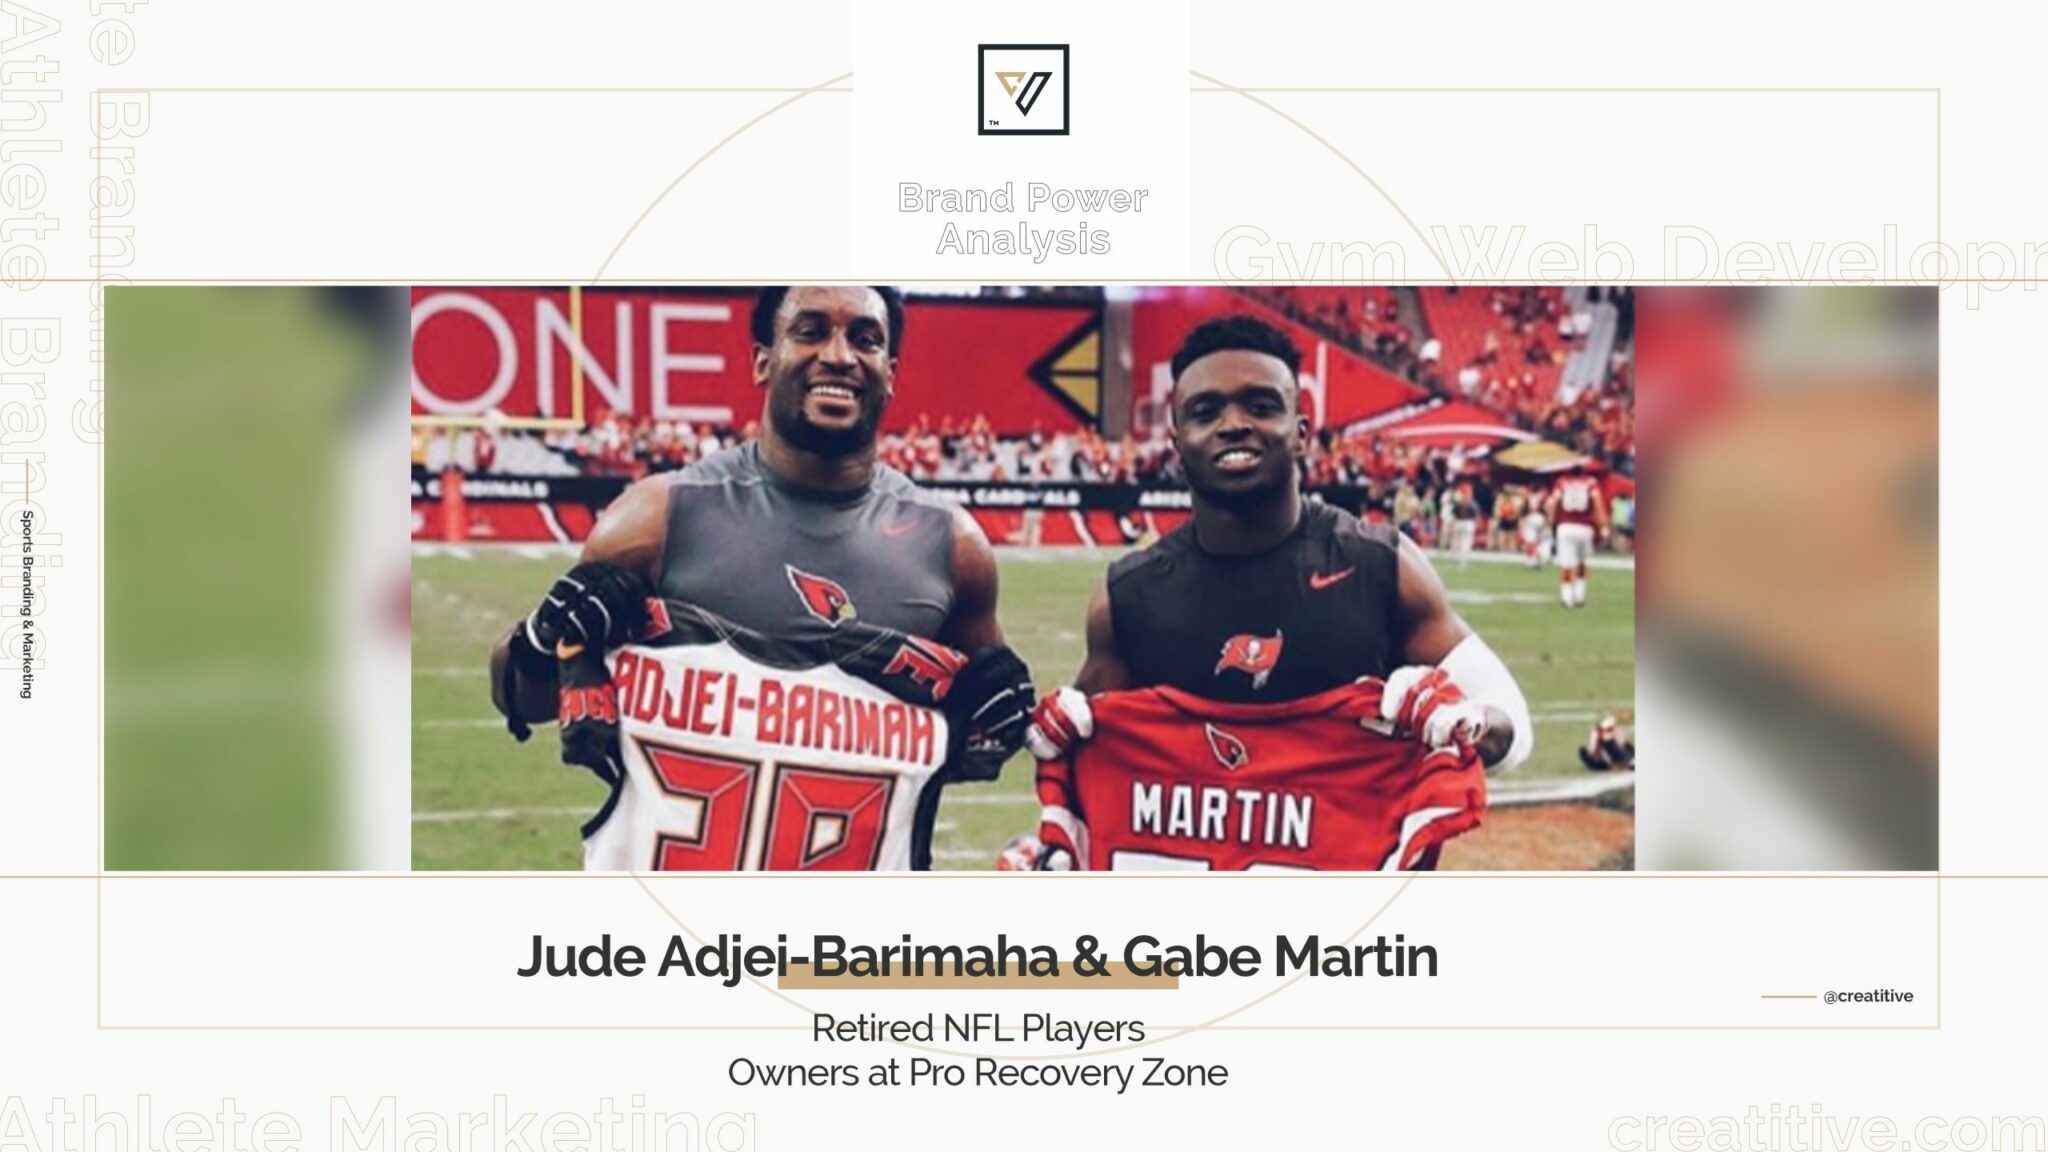 Brand Power Analysis: Gabe Martin and Jude Adjei-Barimah Retired NFL Players